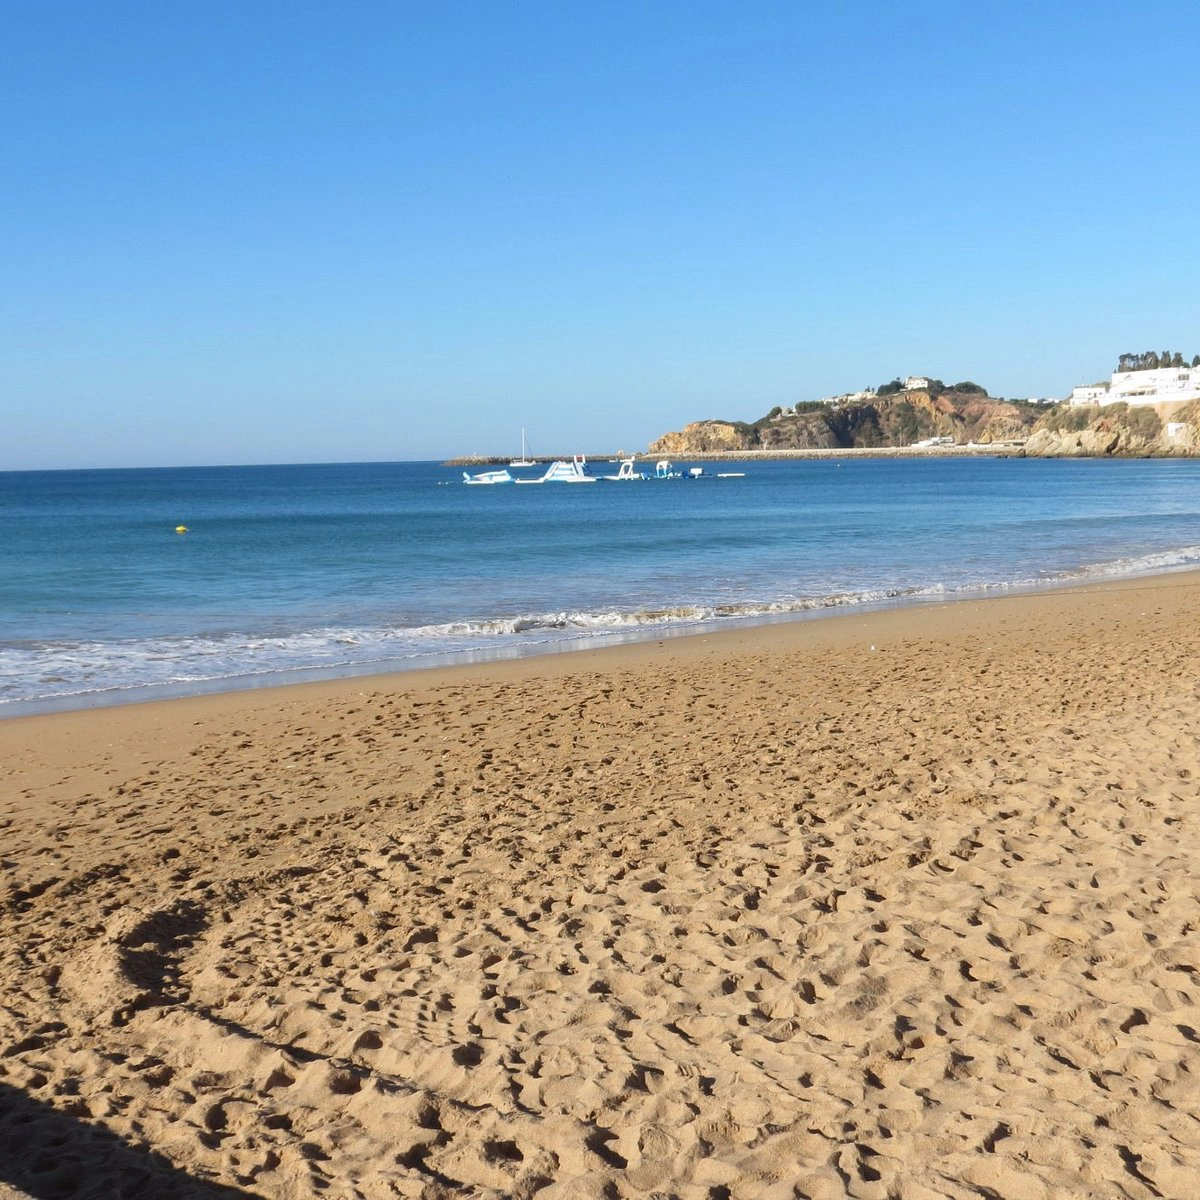  Inatel  strand - Algarve